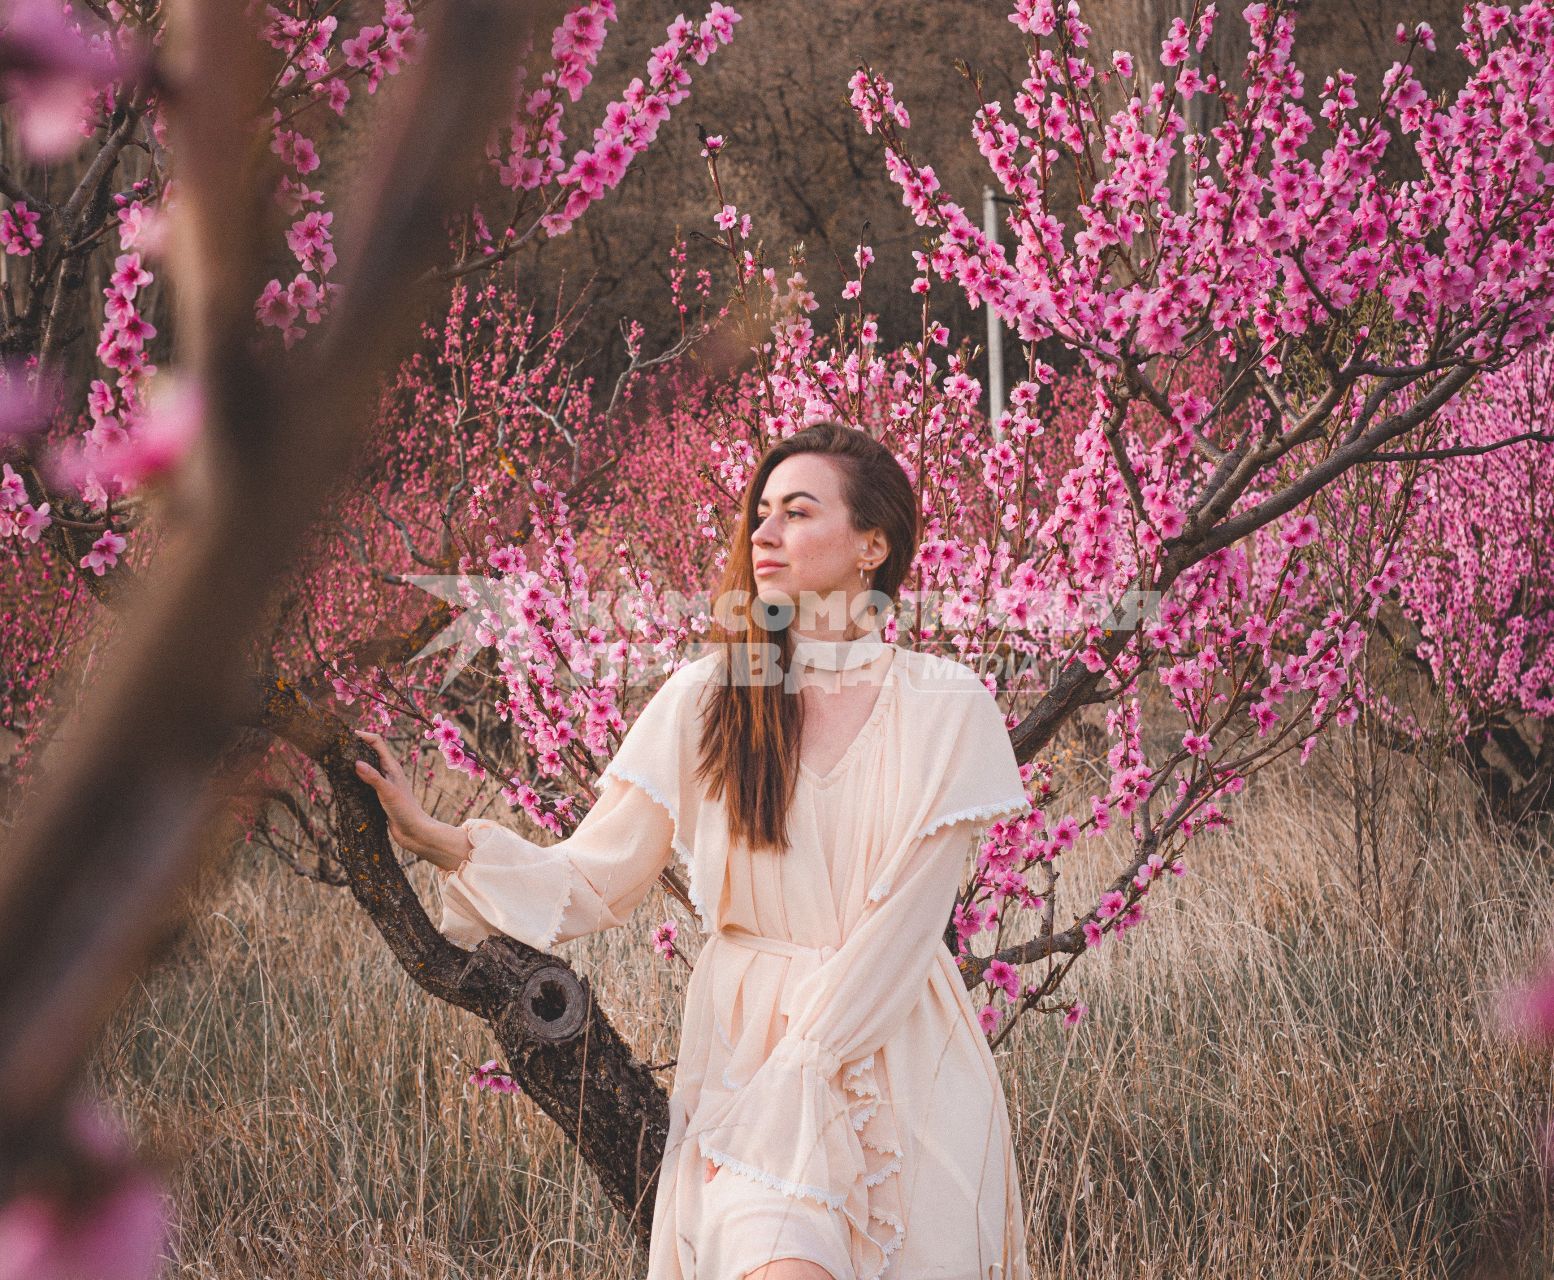 Крым. Девушка позирует на фоне цветущего персикового дерева.